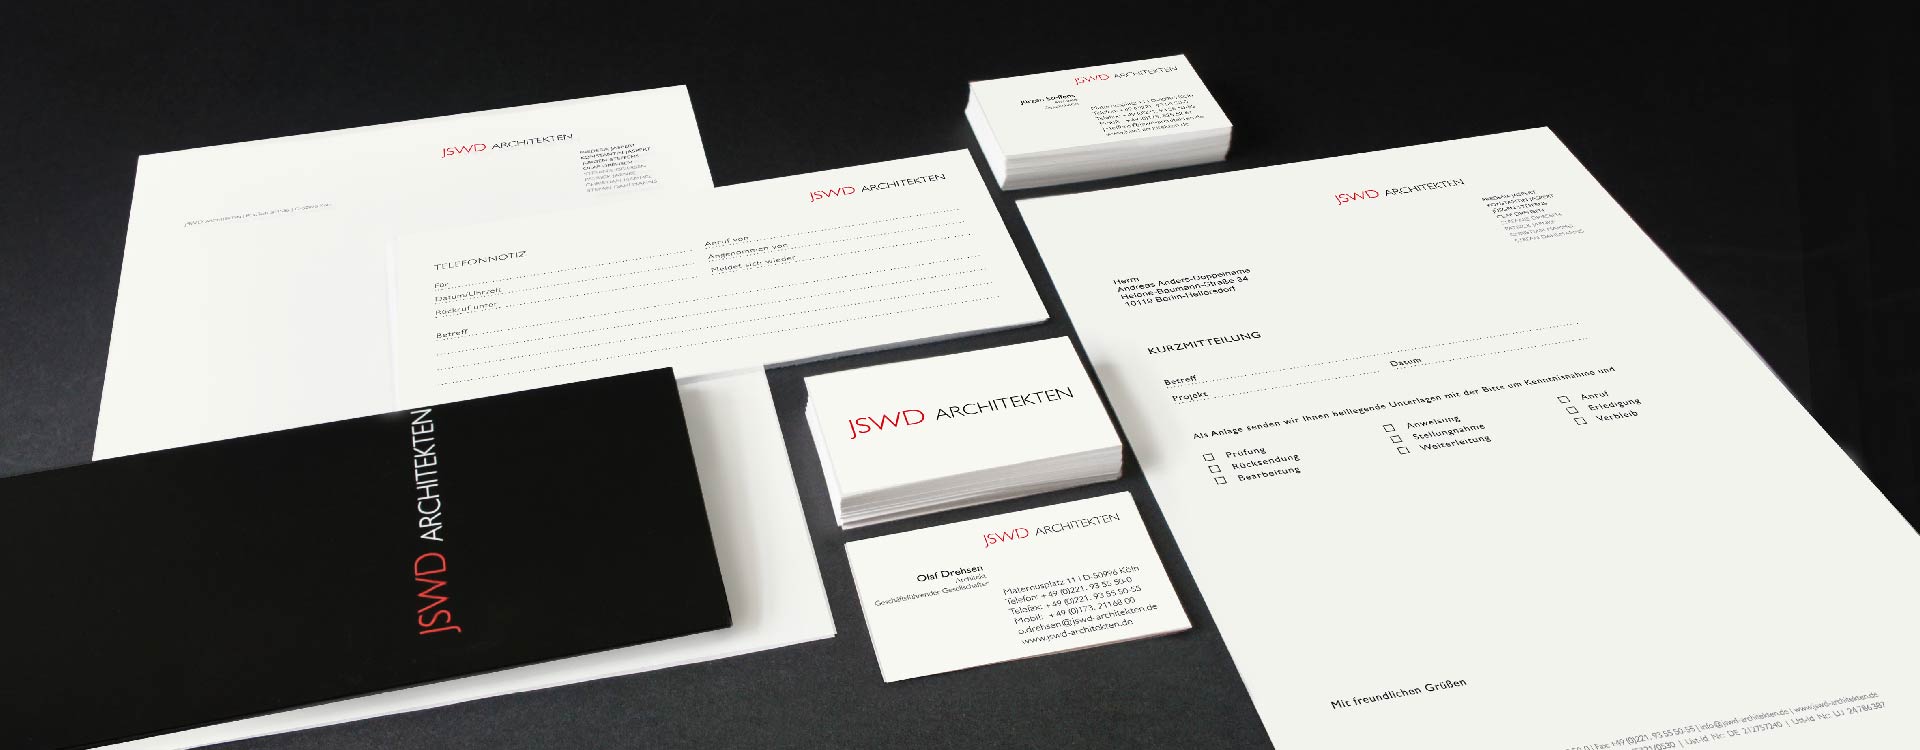 Logo, business cards, letter-headed paper, and leaflet for JSWD Architekten, Köln; Design: Kattrin Richter | Graphic Design Studio